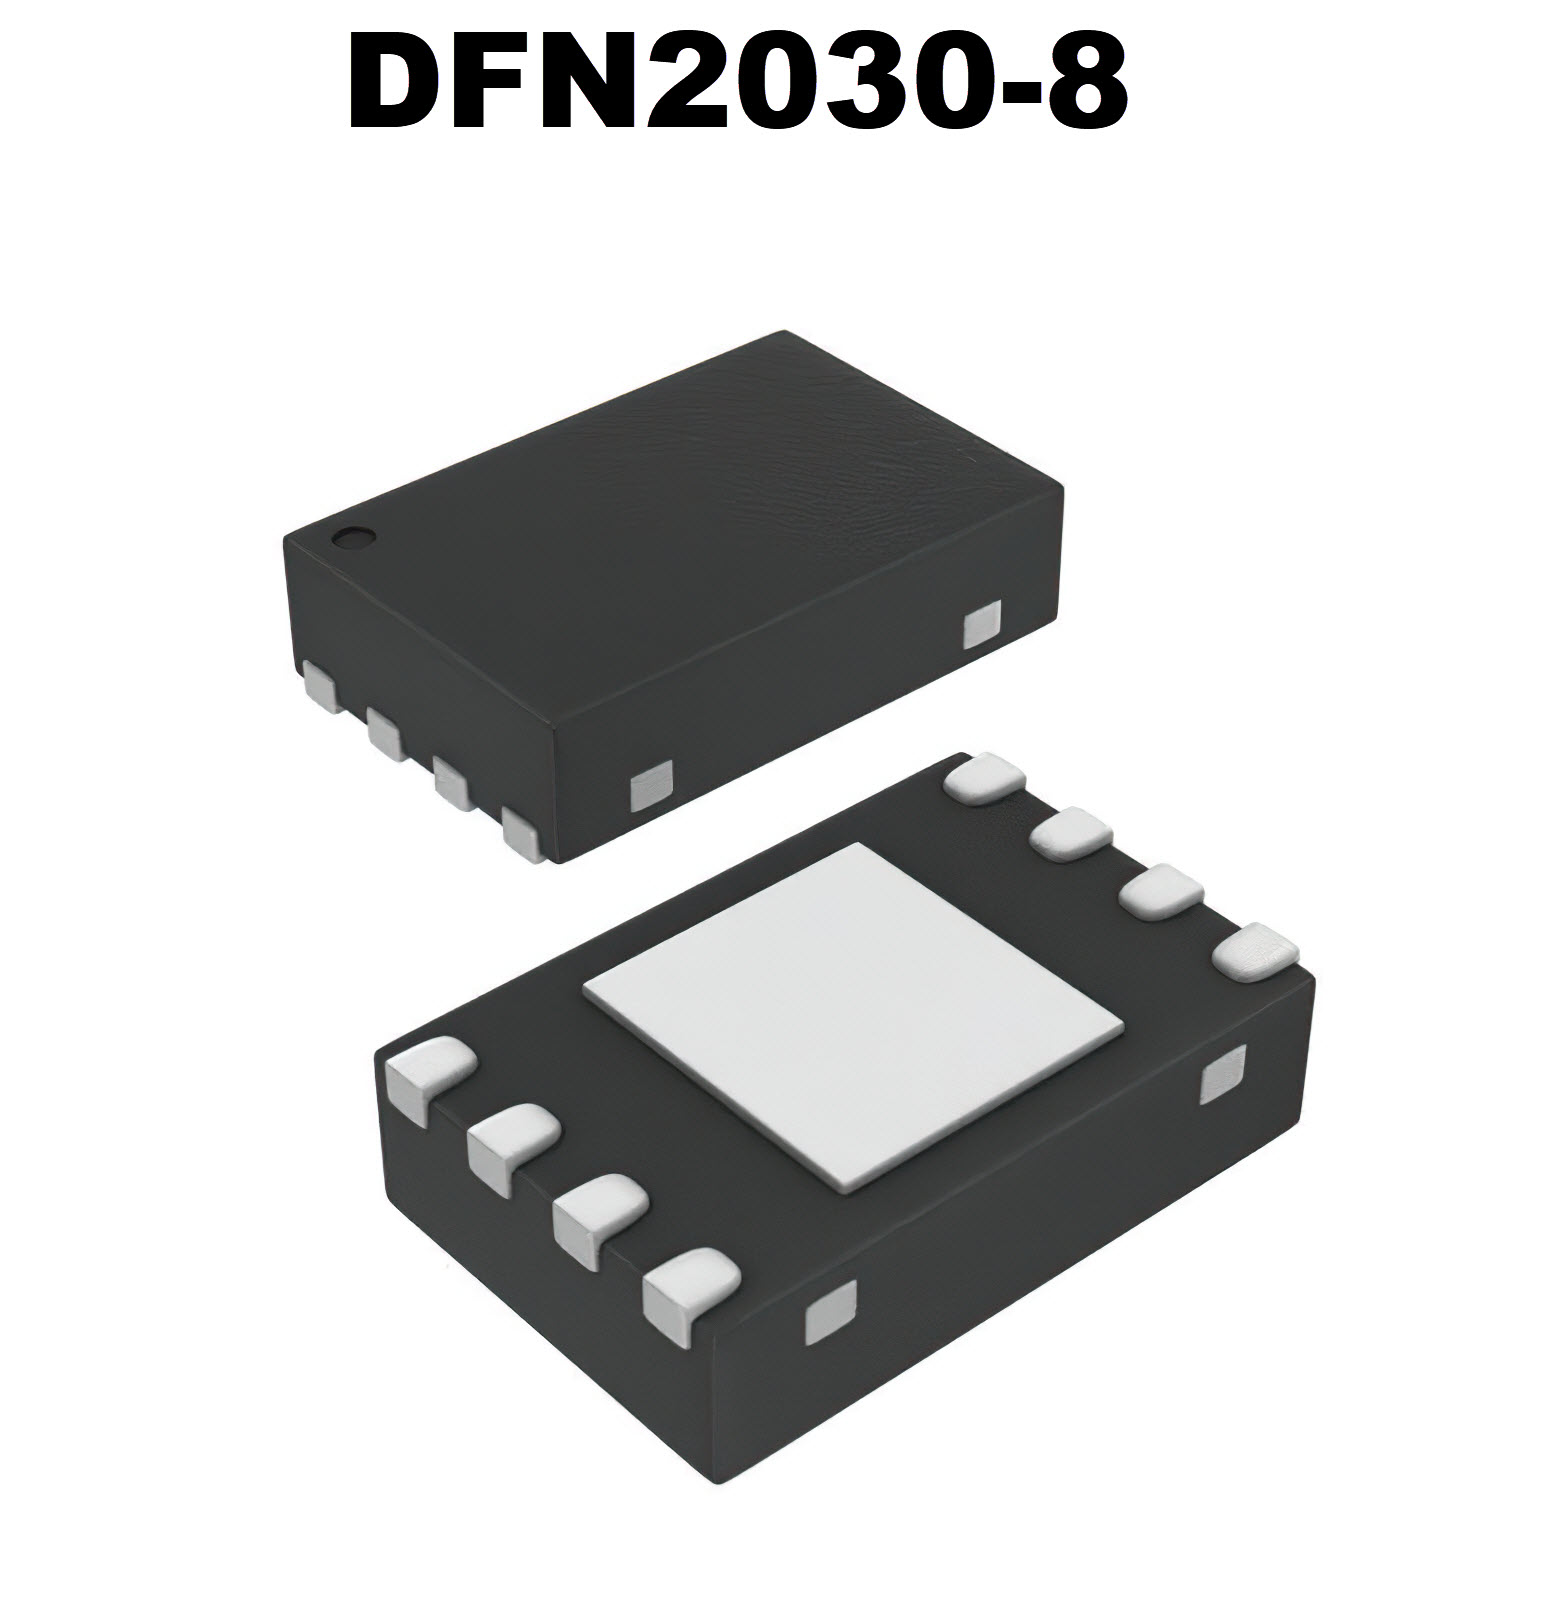 DFN2030-8